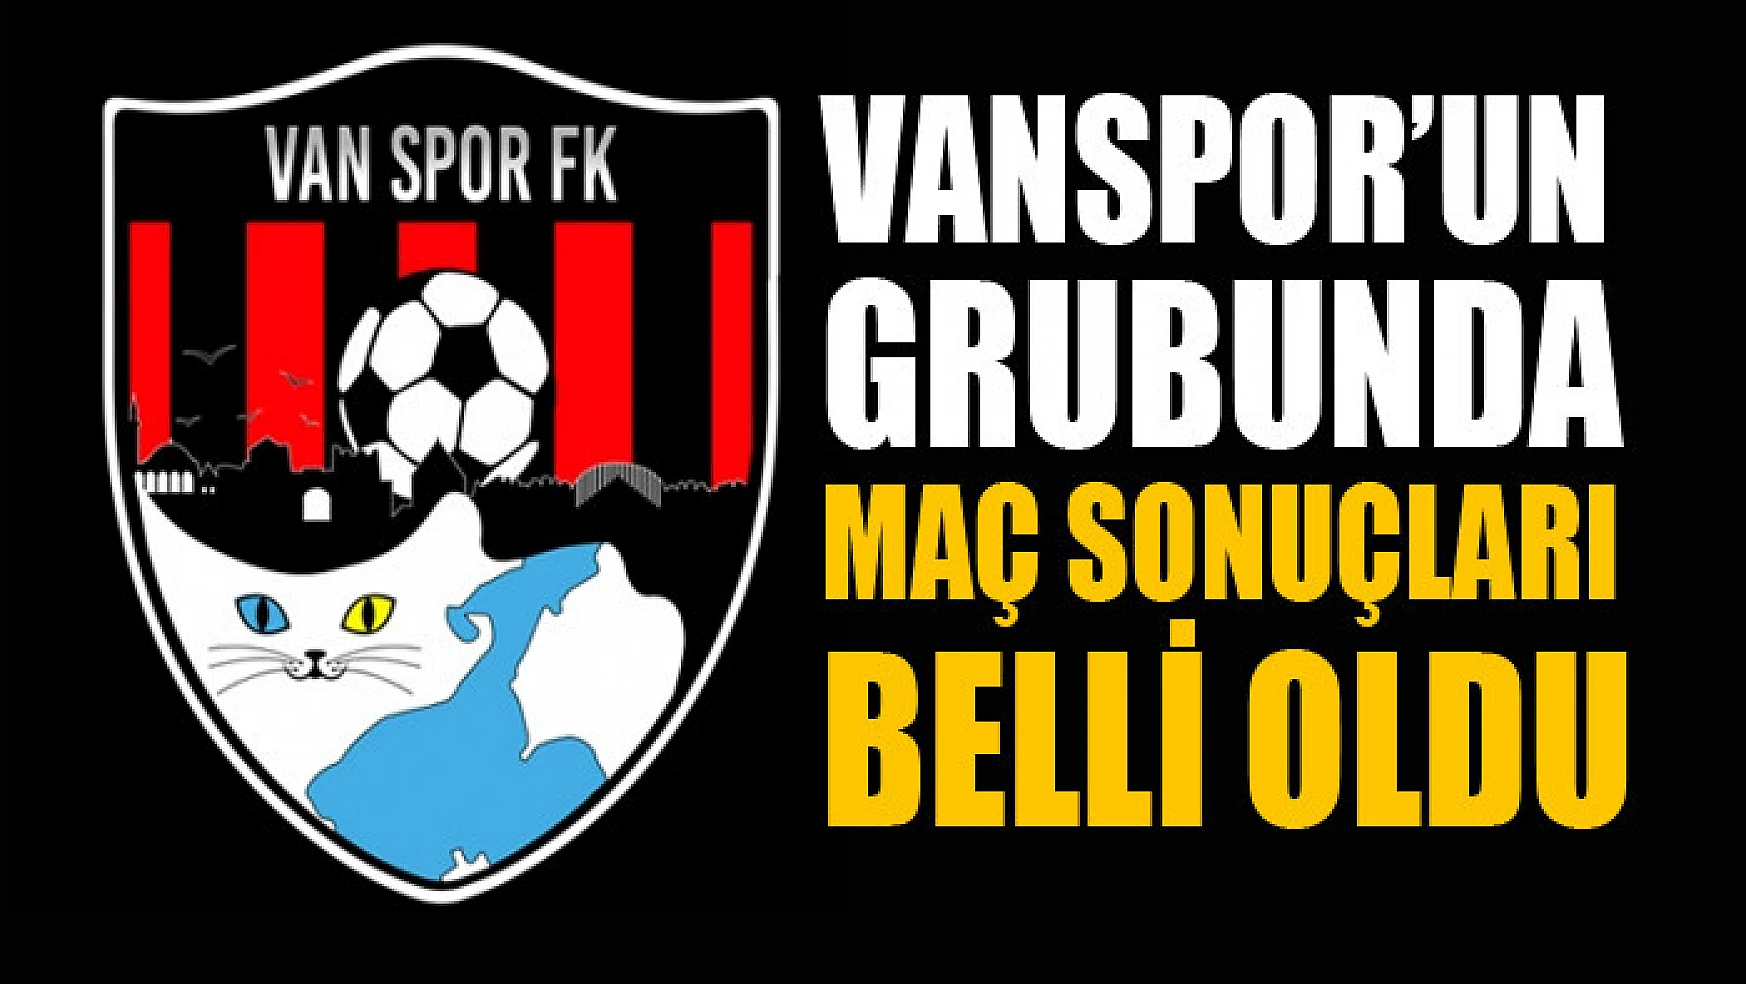 Vanspor'un grubunda maç sonuçları belli oldu